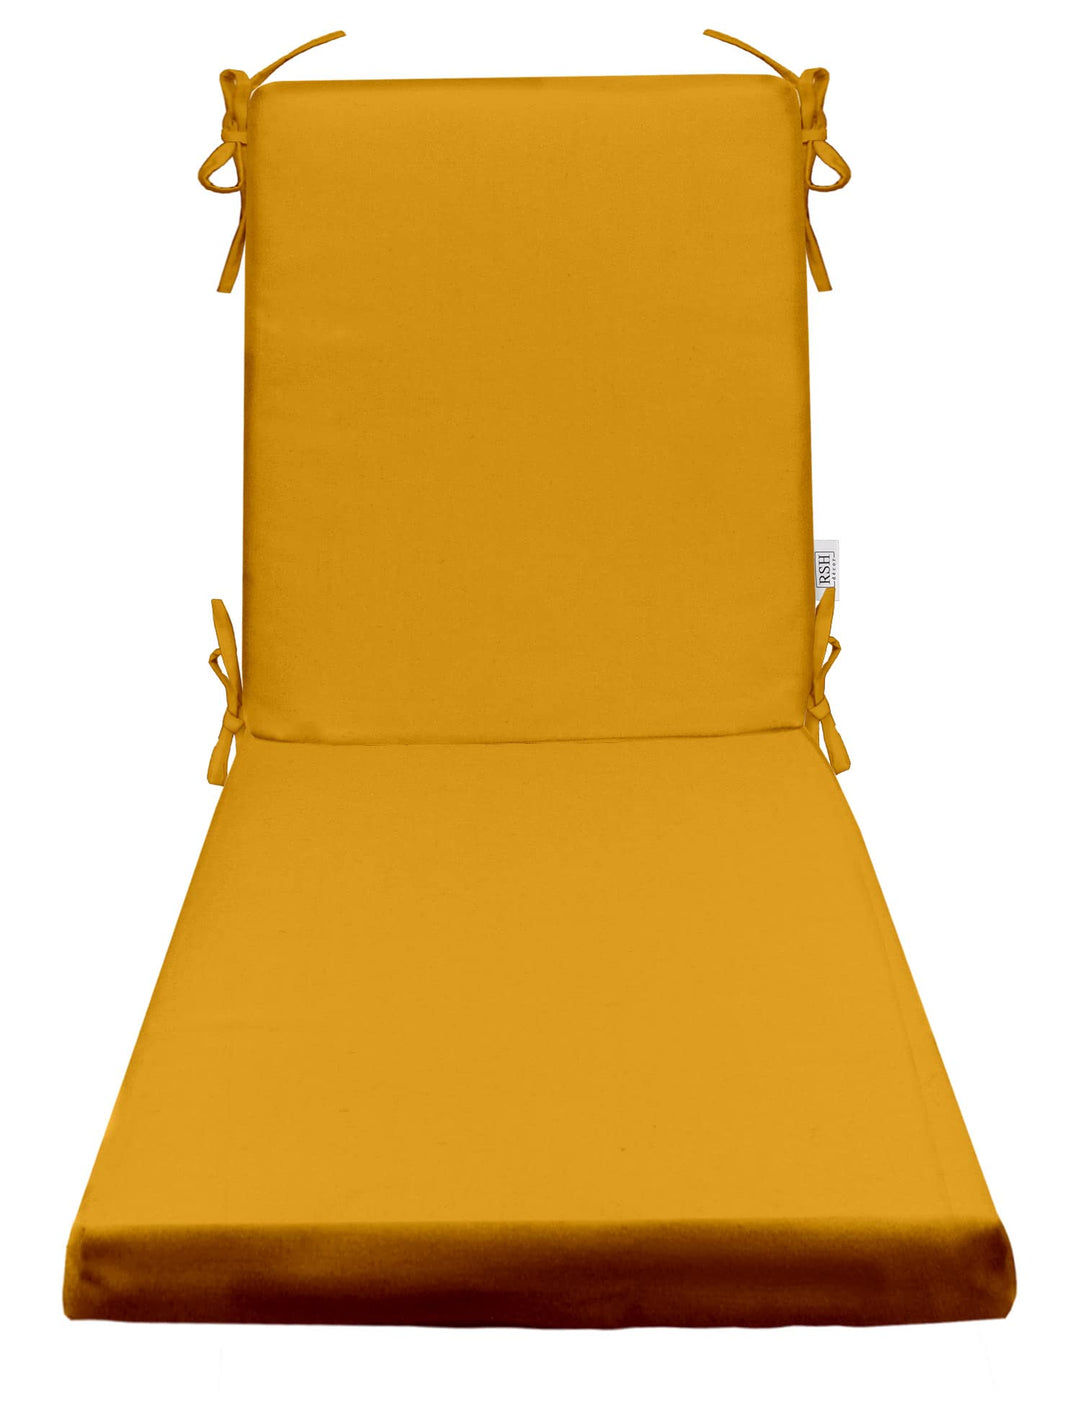 Chaise Lounge Chair Cushion, Foam, 72" H x 22" W", Sunbrella Solids - RSH Decor